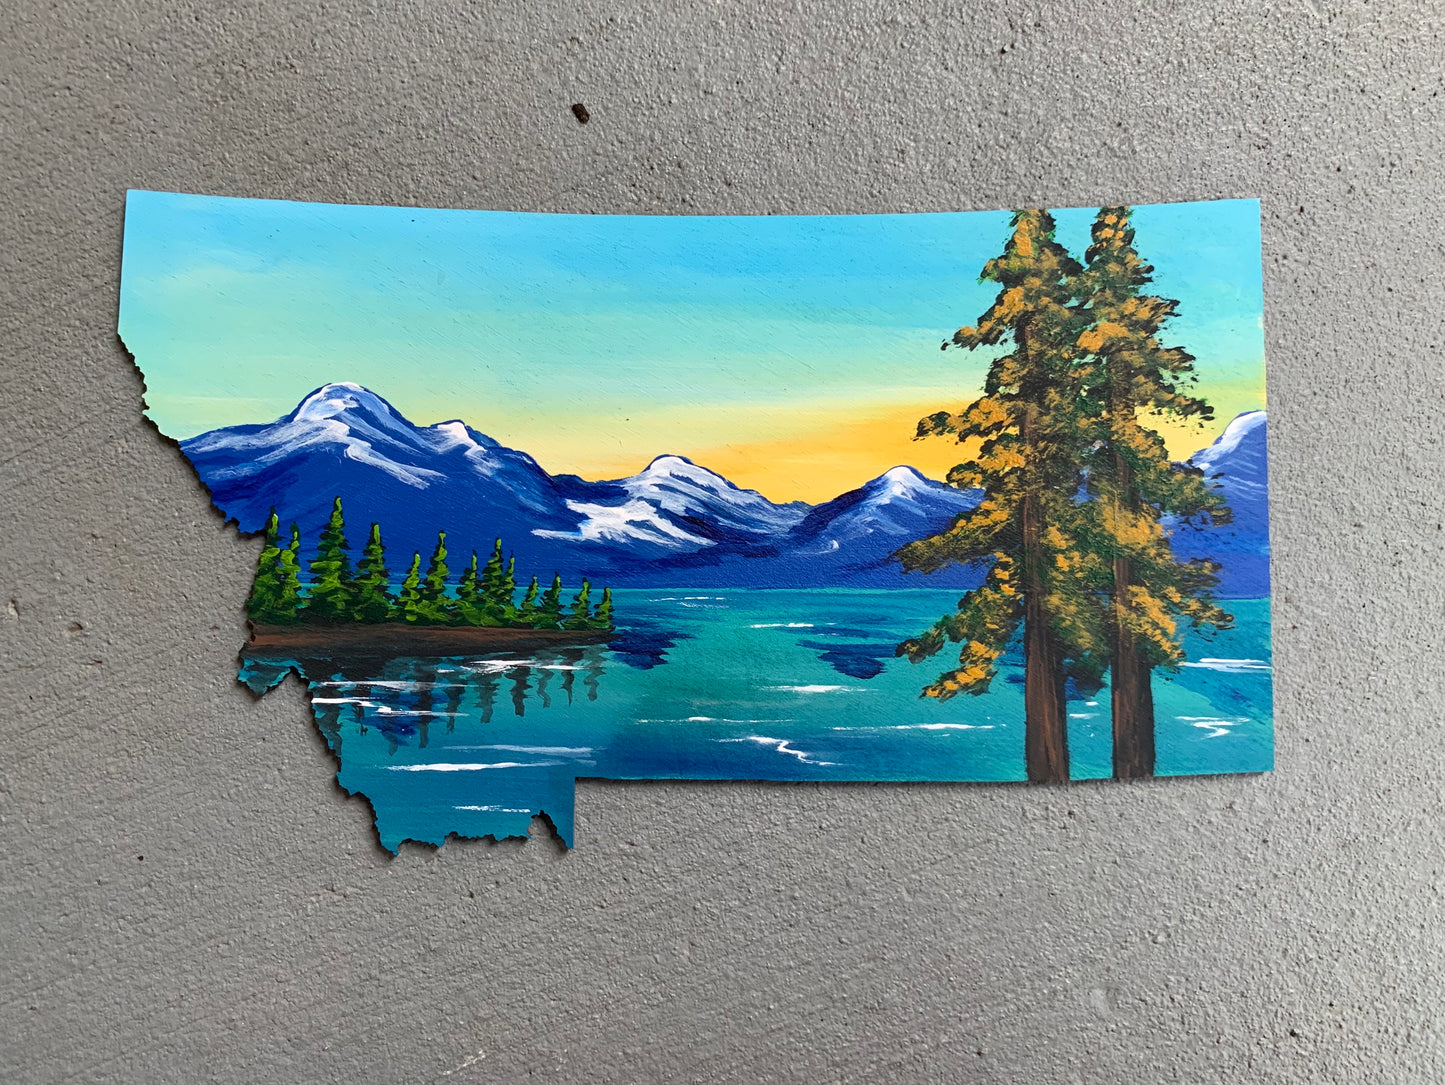 Montana Flathead lake wood cutout painting